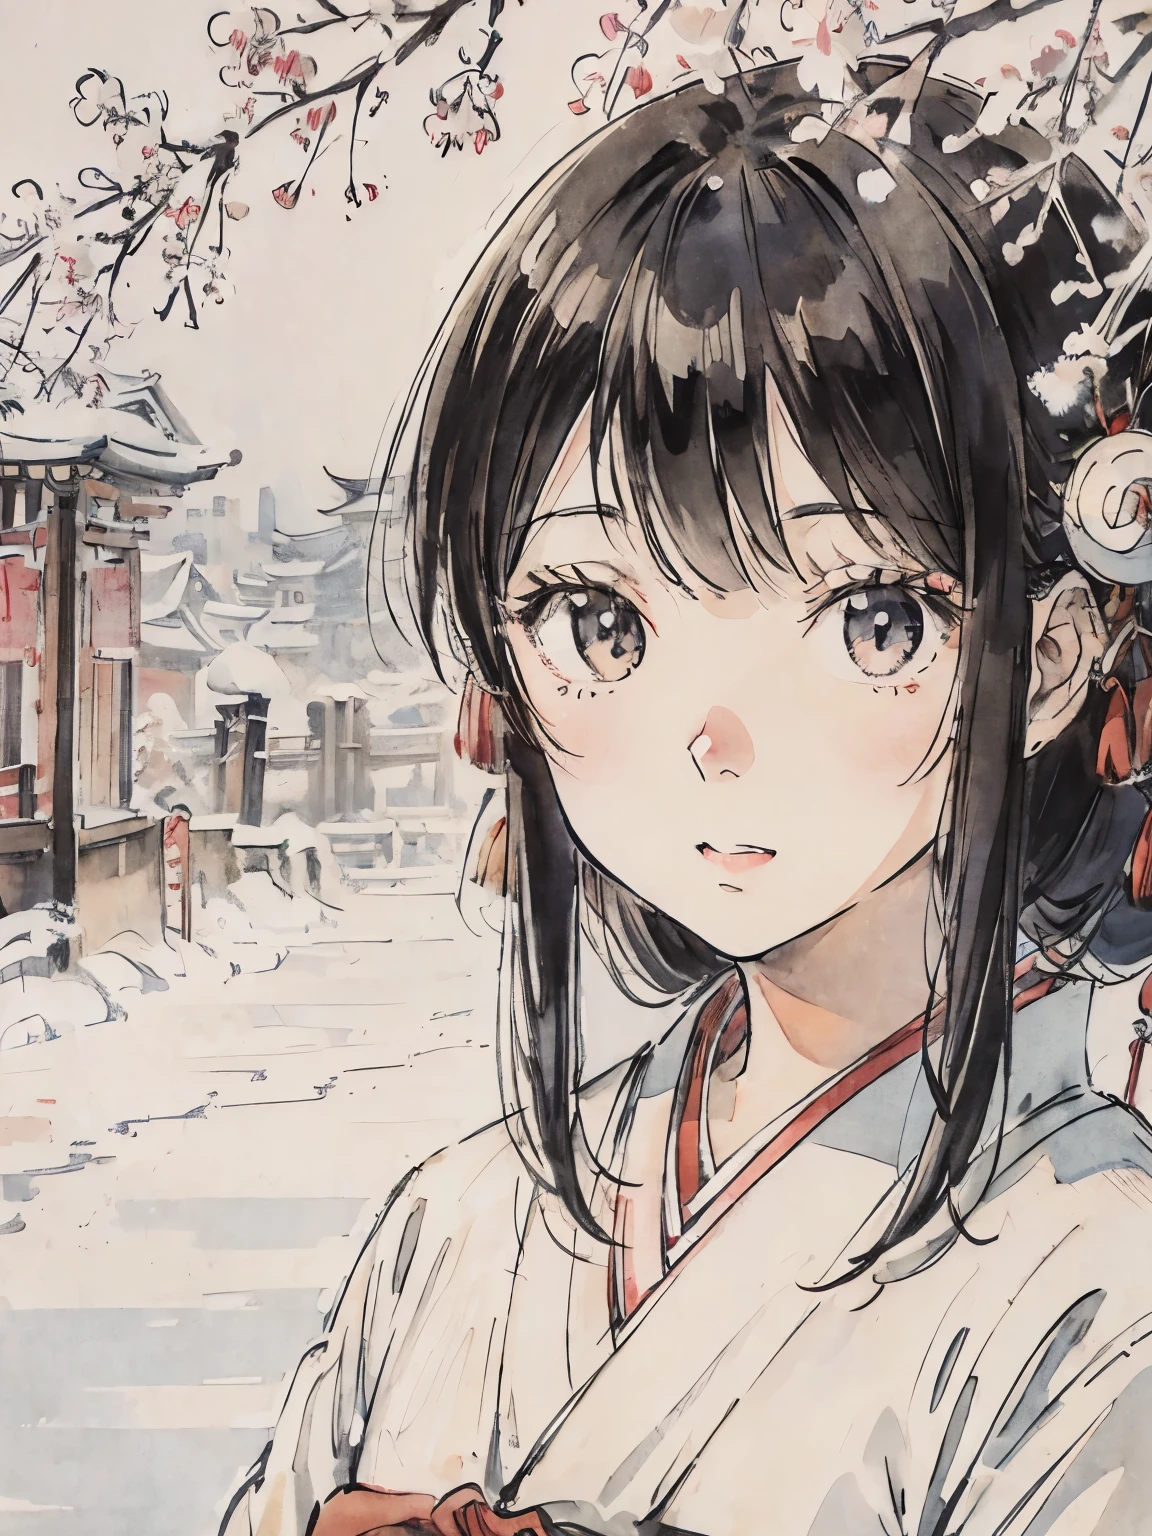 Ein Mädchen im Kimono in einer verschneiten Stadt、Reine weiße Landschaft、Asakusa、Schwarzes Haar、Malerei im japanischen Stil、Innenstadt von Kyoto、Nahaufnahme des Gesichts